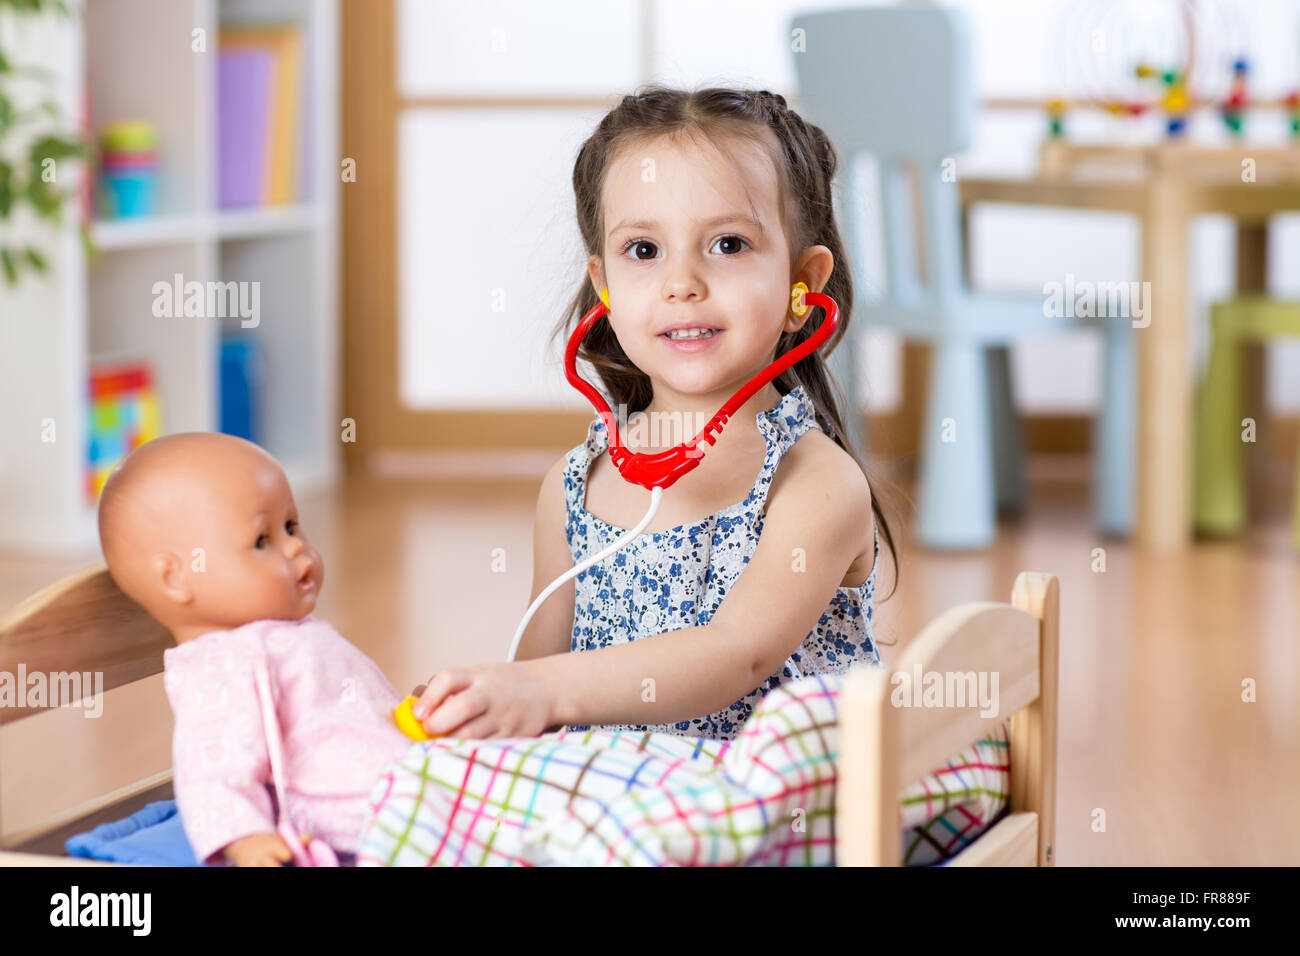 Kinder spielen Rollenspiel Arzt Kleidung Spielzeug Baby Nurse Doktor Durchfüh Nw 